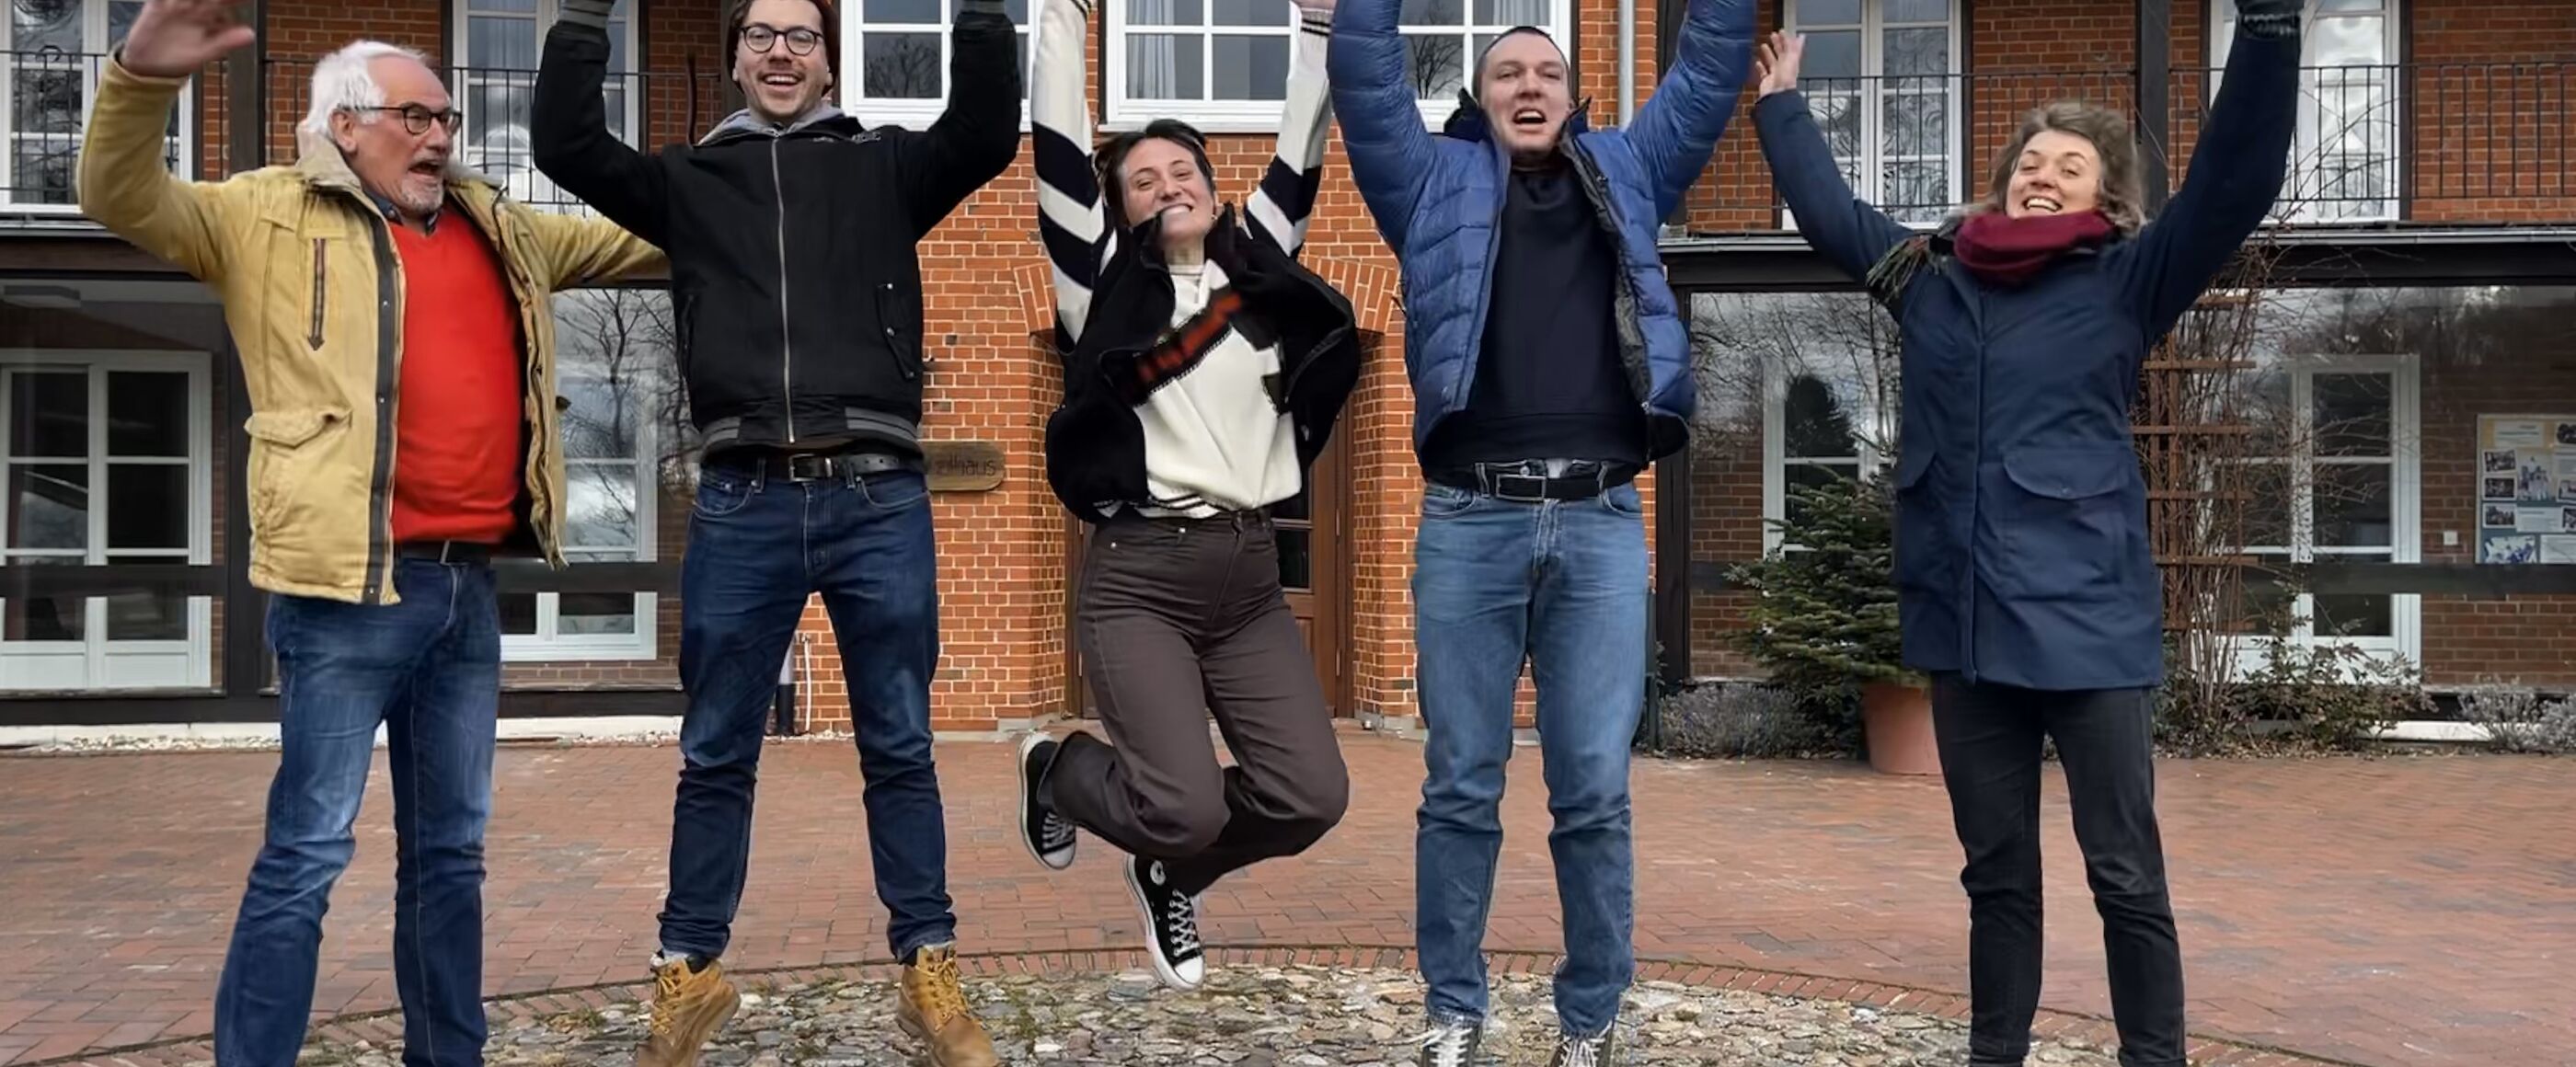 Fünf Menschen stehen auf einem Hofgelände im Freien und springen mit hochgestreckten Armen lachend in die Luft.